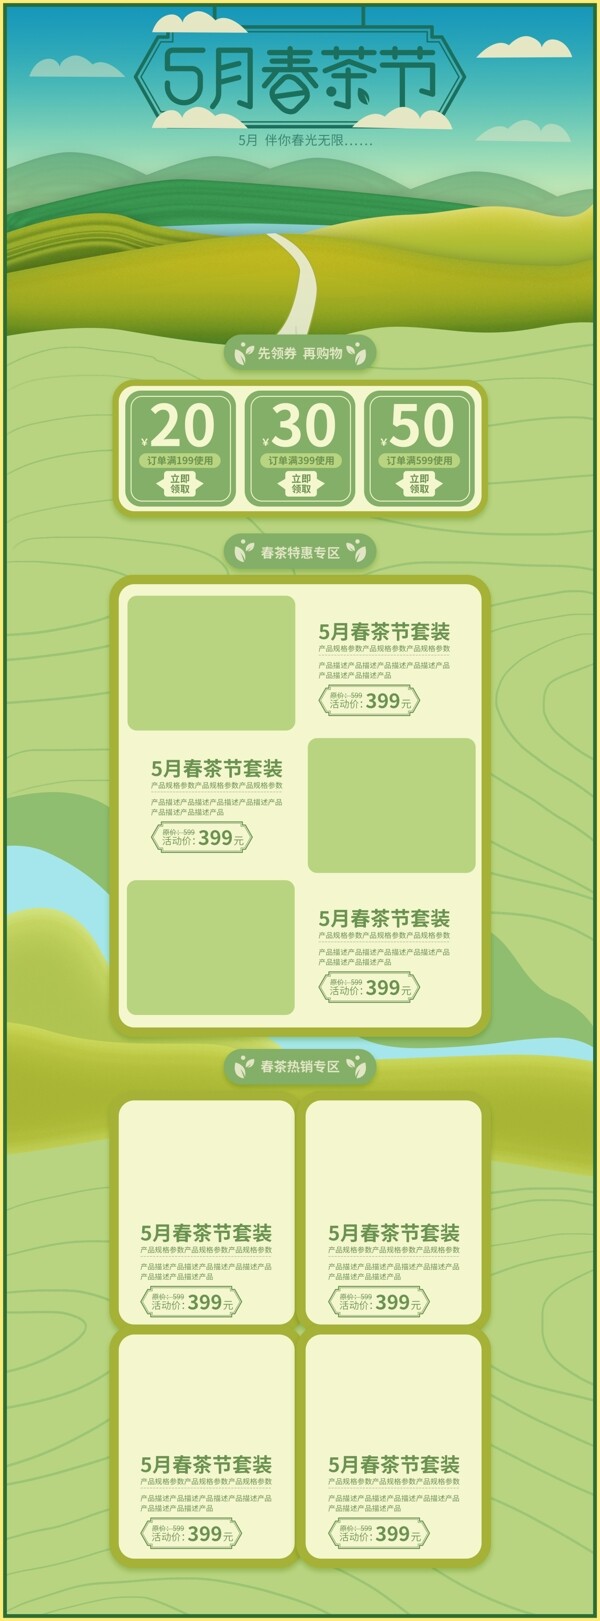 5月春茶节电商天猫清新自然手绘风首页模板